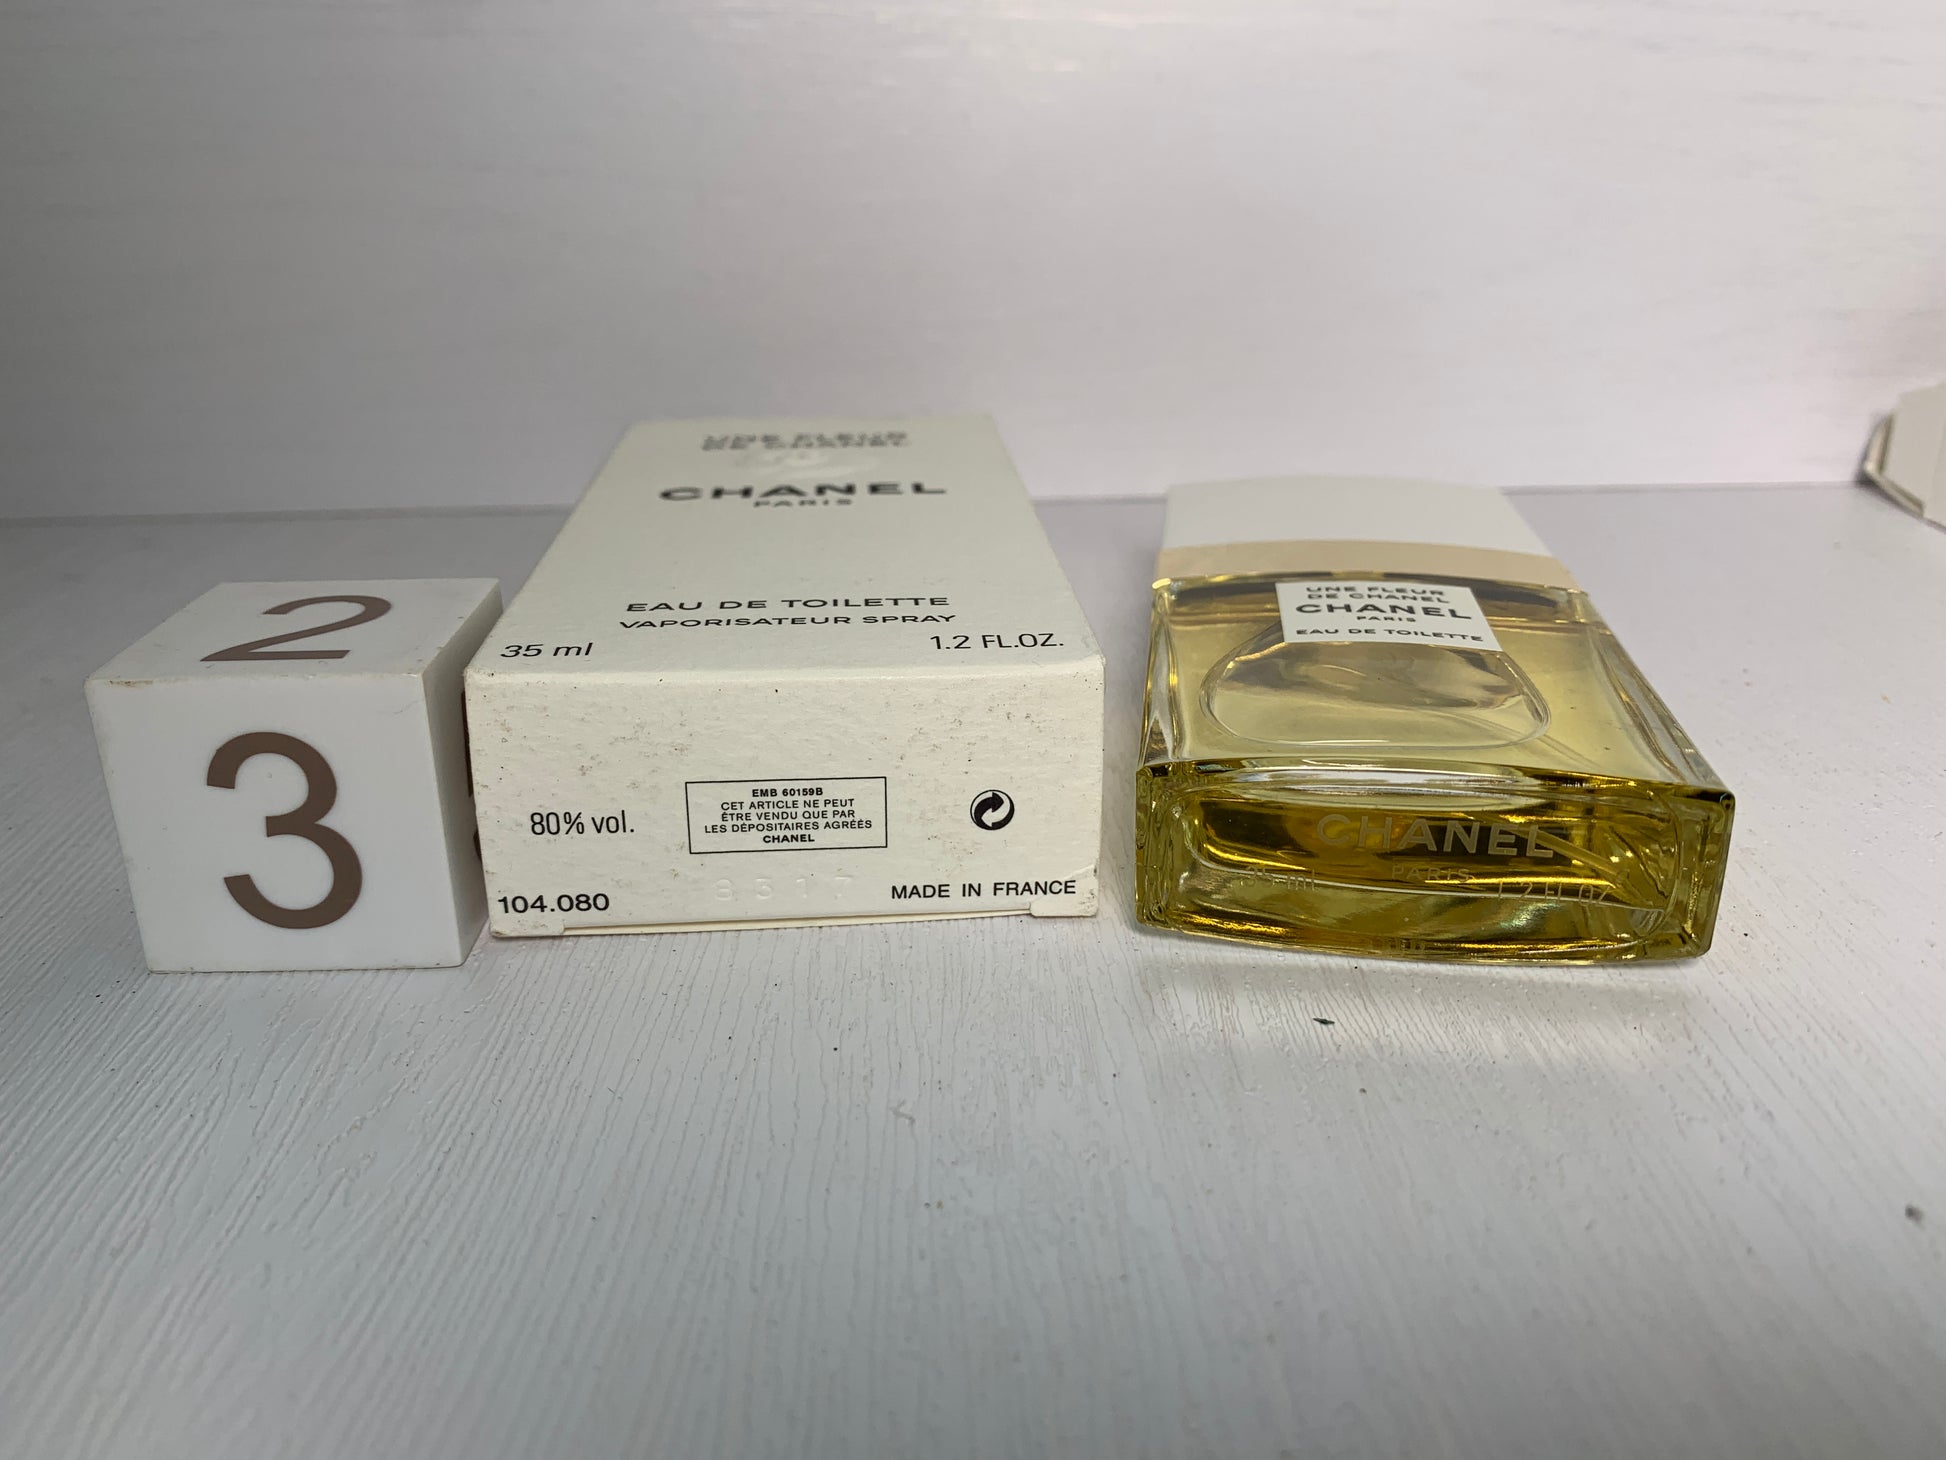 Rare Chanel une fleur de 35ml 1.2 oz Eau de Toilette EDT - 3DEC – Trendy  Ground